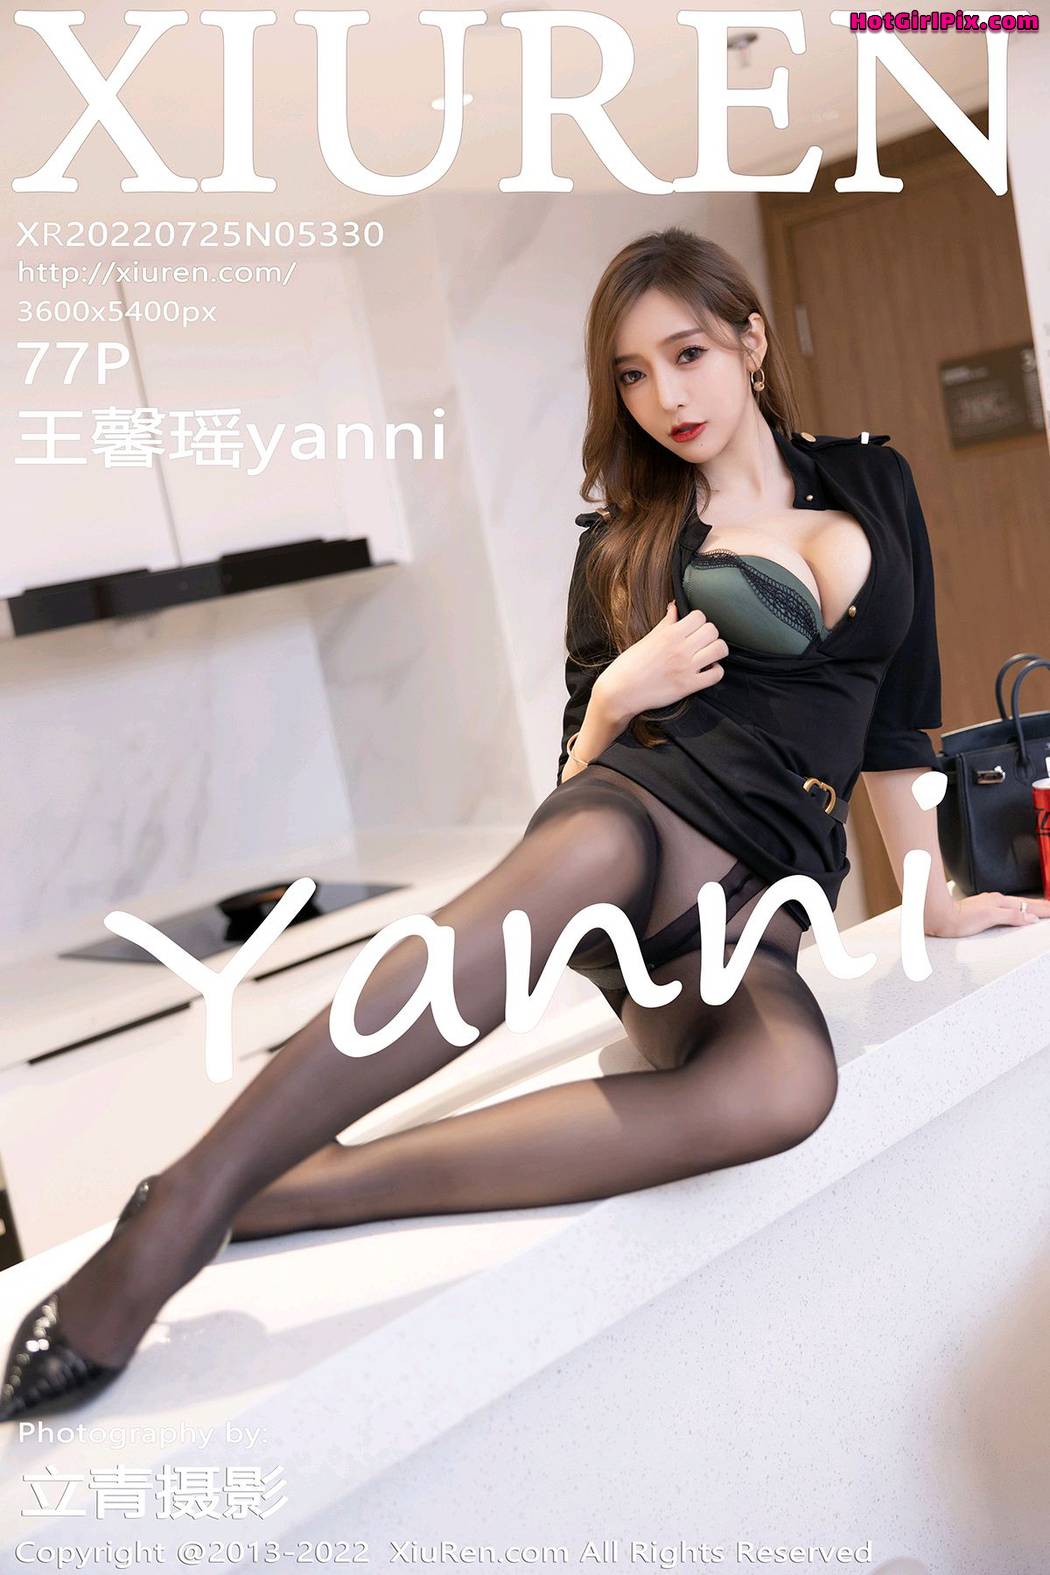 [XIUREN] No.5330 Wang Xin Yao 王馨瑶yanni Cover Photo